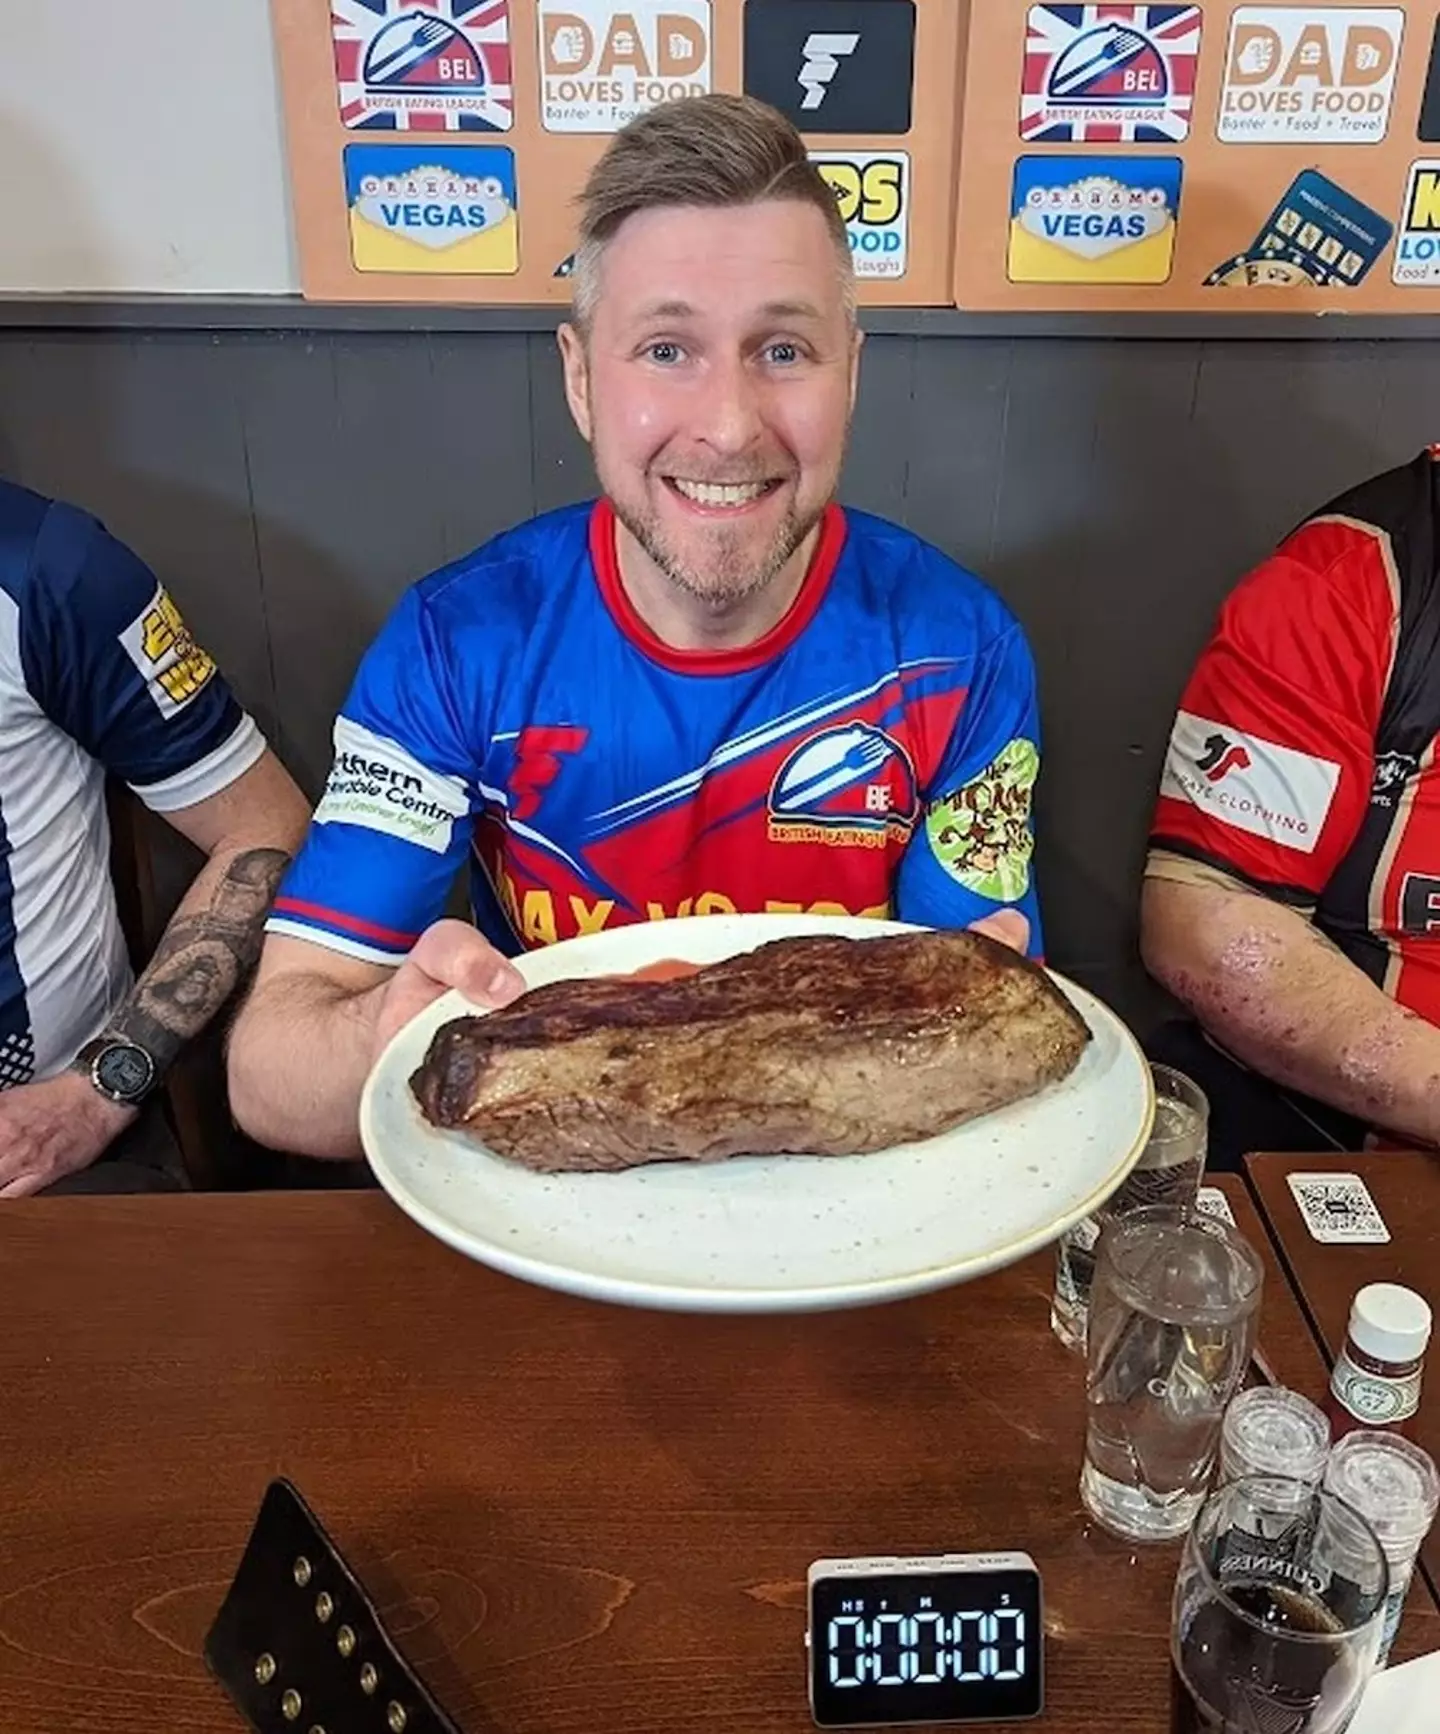 That's one massive steak.